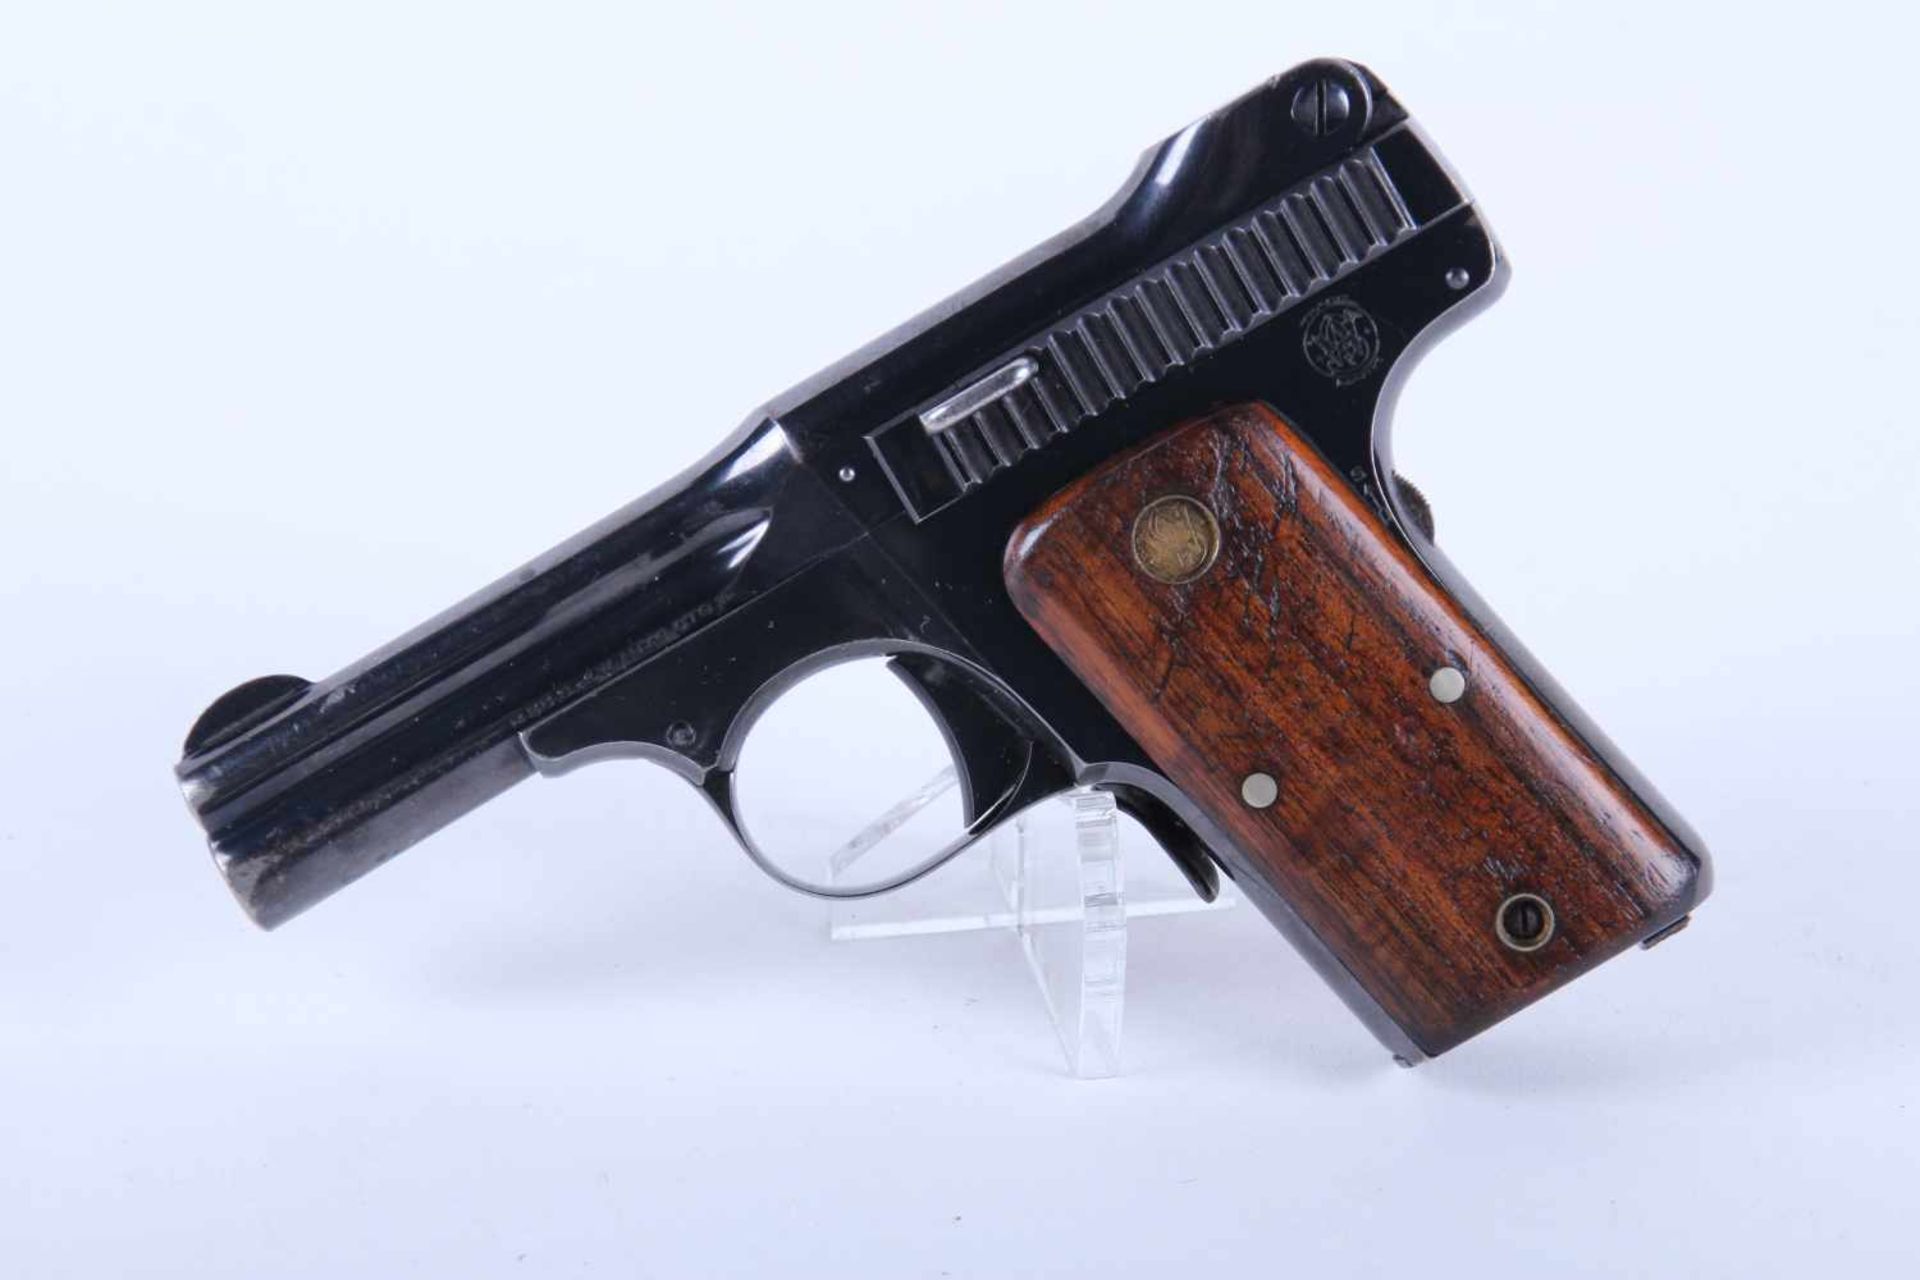 Pistolet Smith & Wesson Mod 35 Catégorie B. Calibre 32 Smith & Wesson. Plaquette en bois, chargeur